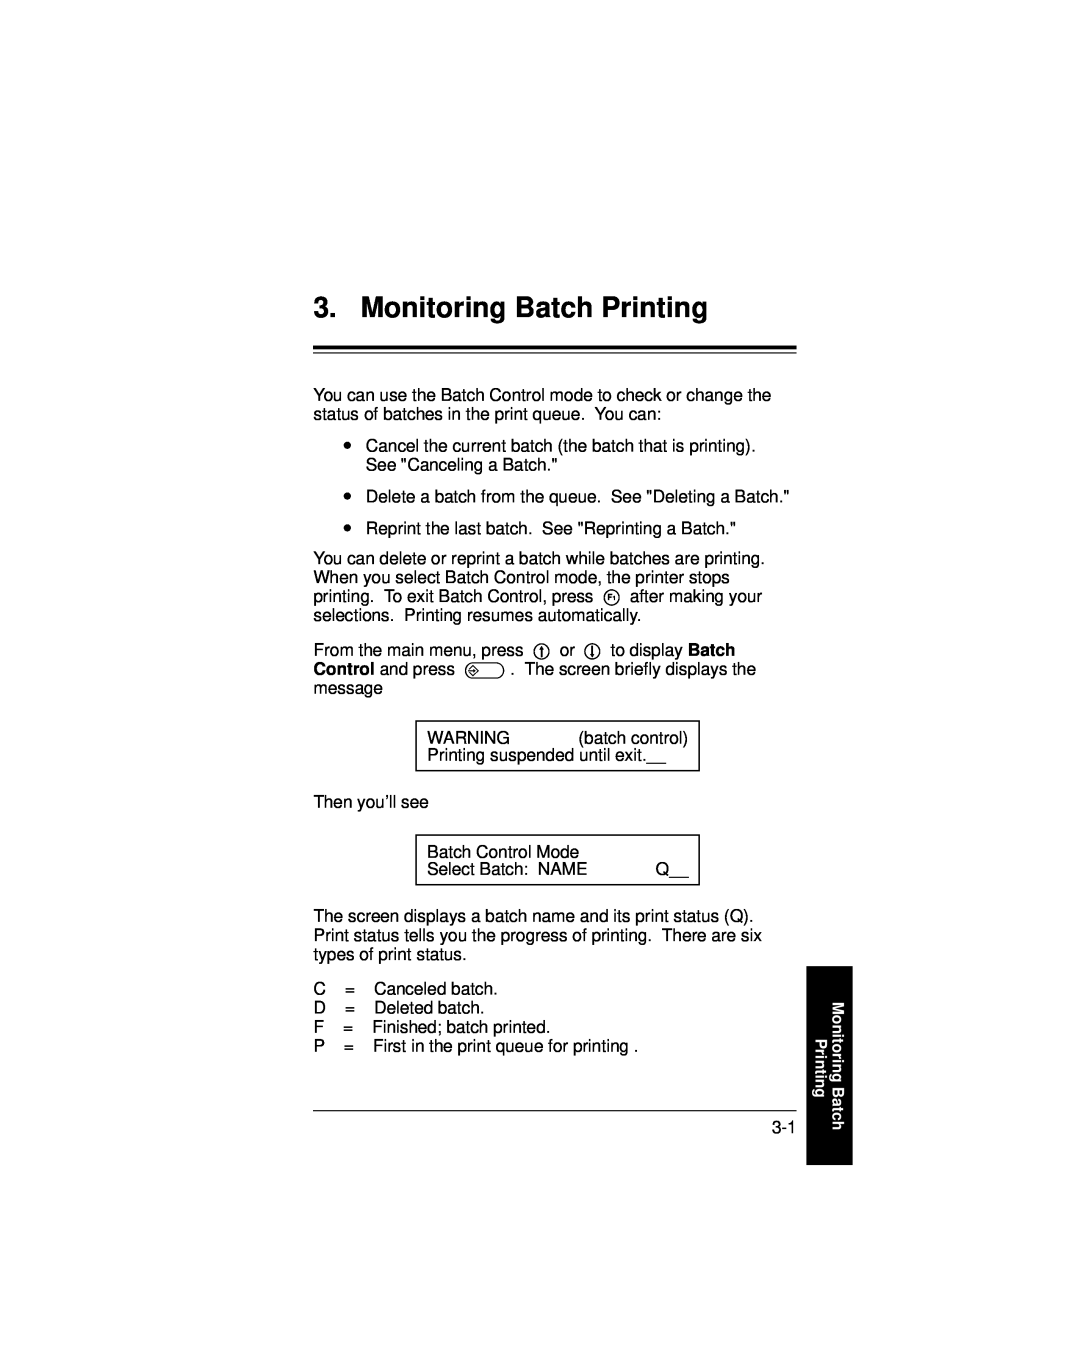 Paxar 9400 manual Monitoring Batch Printing 